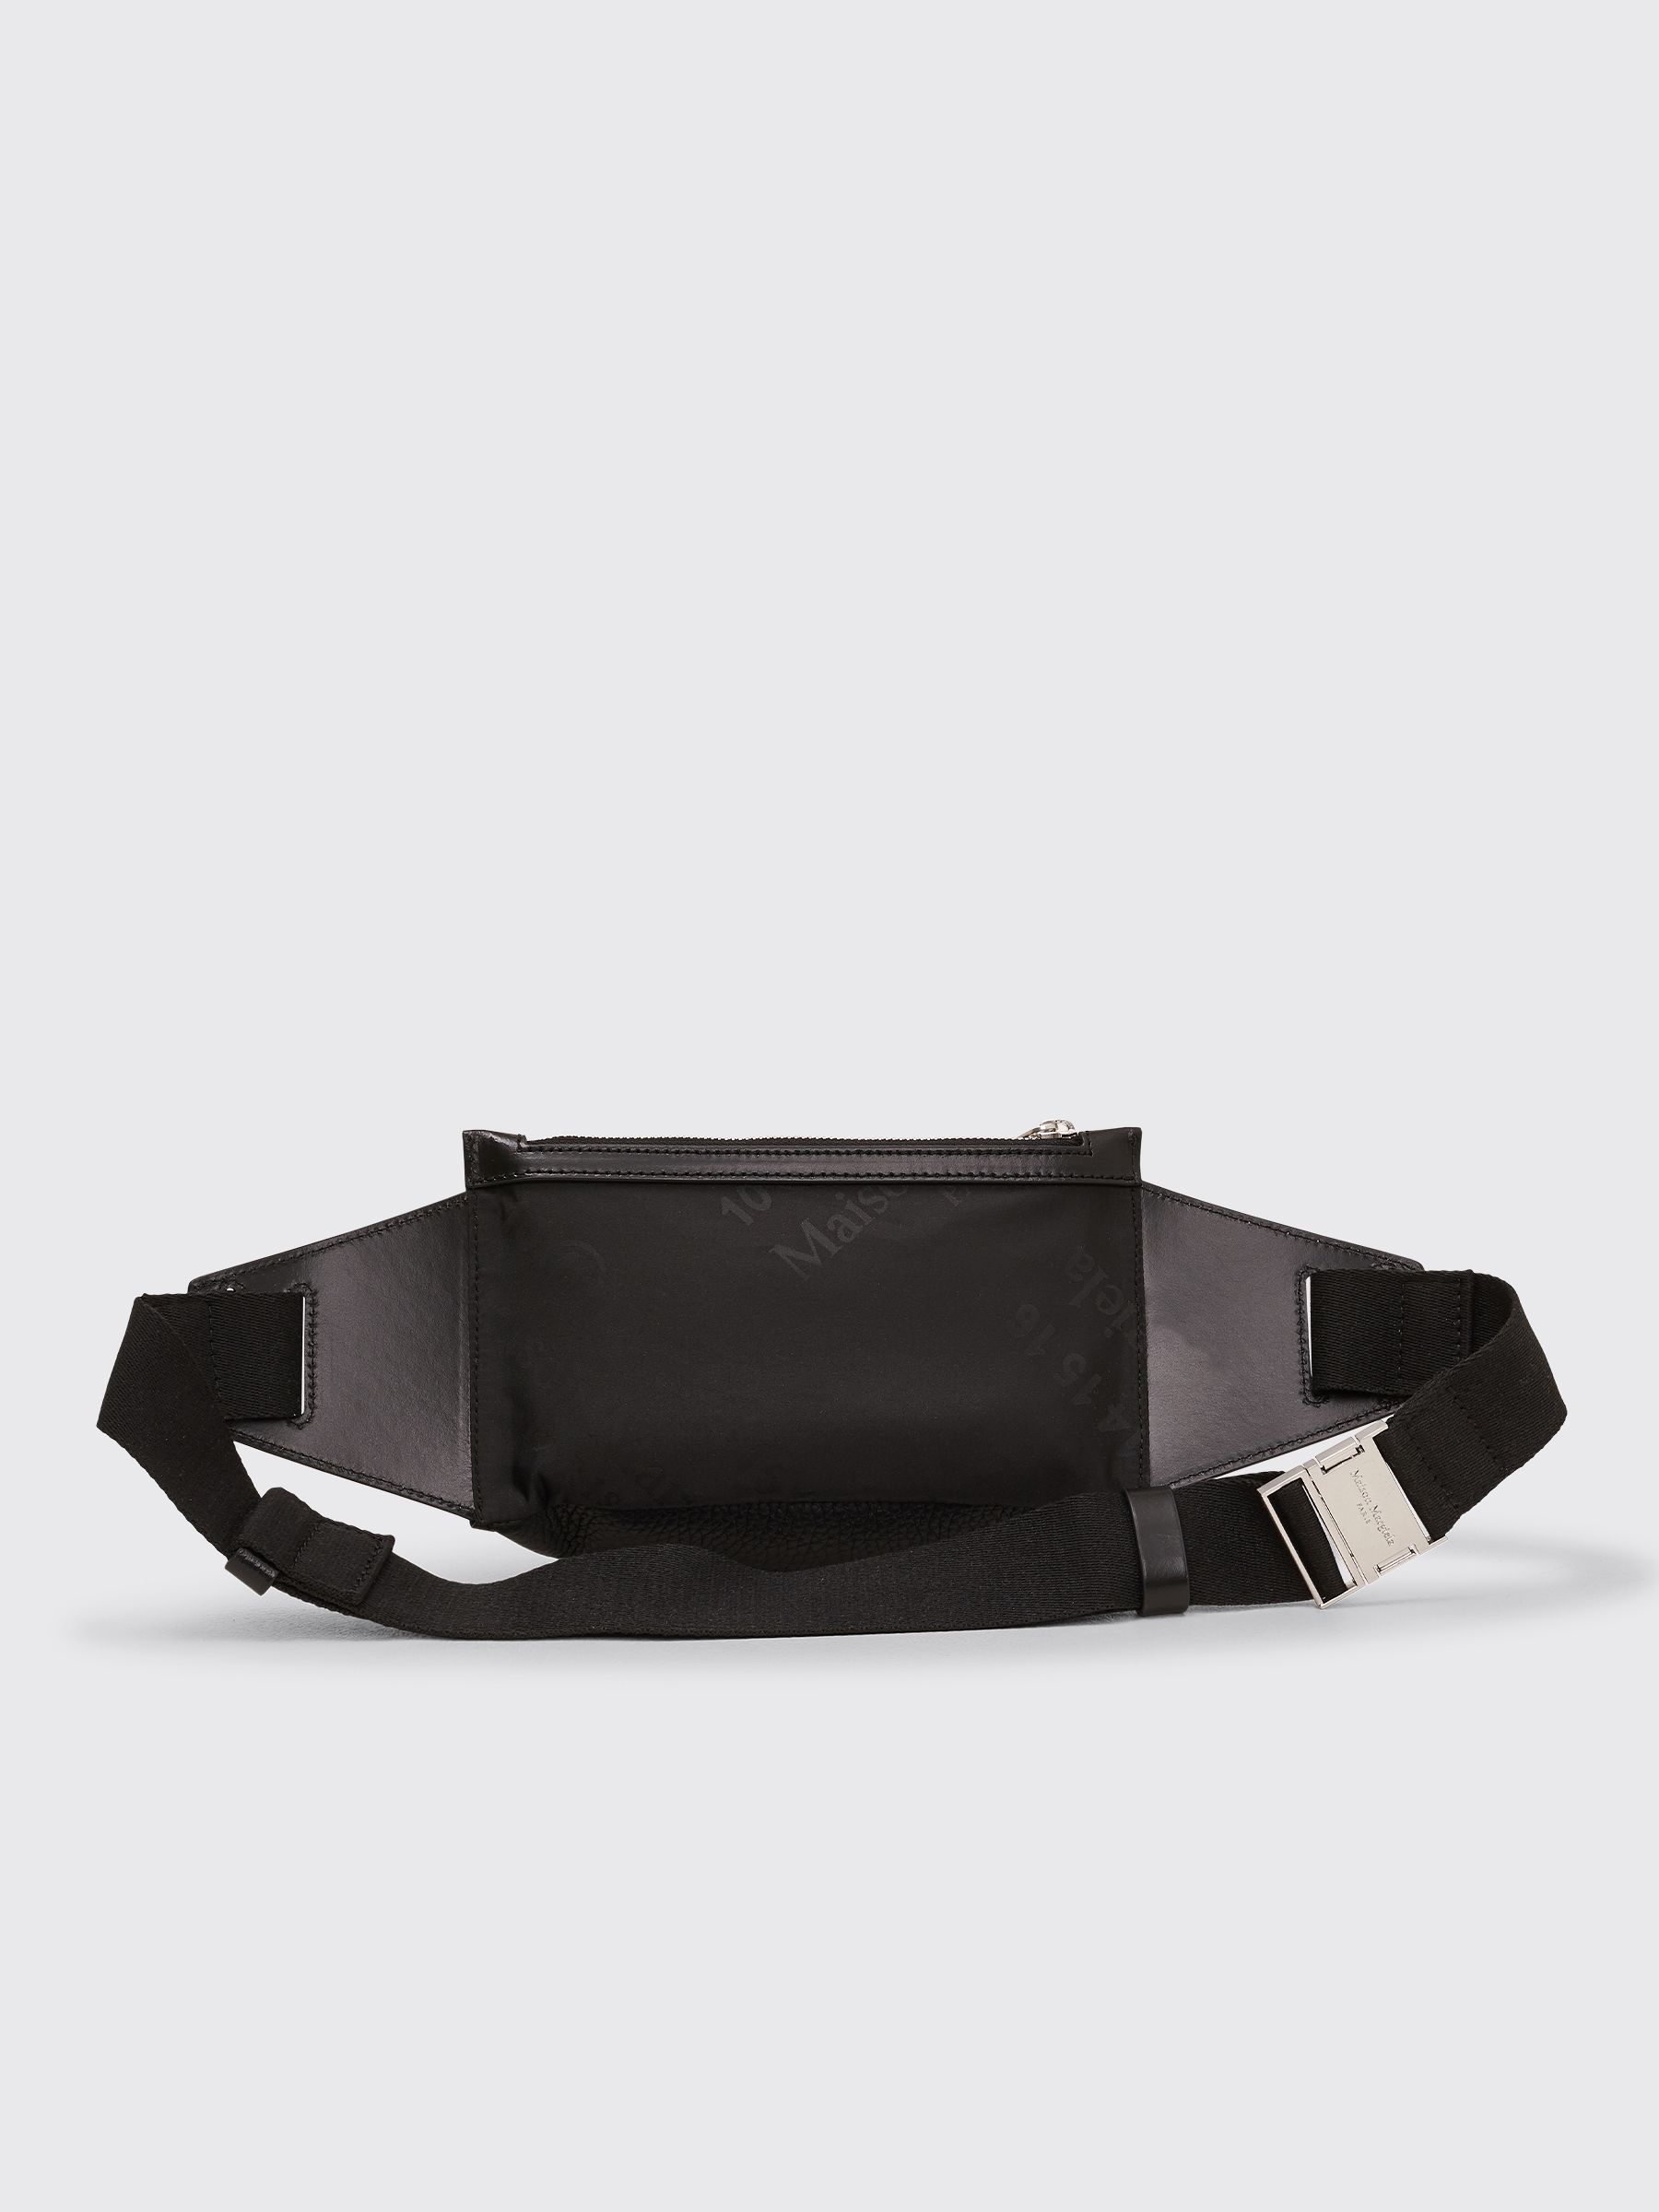 Très Bien - Maison Margiela Leather Belt Bag Black